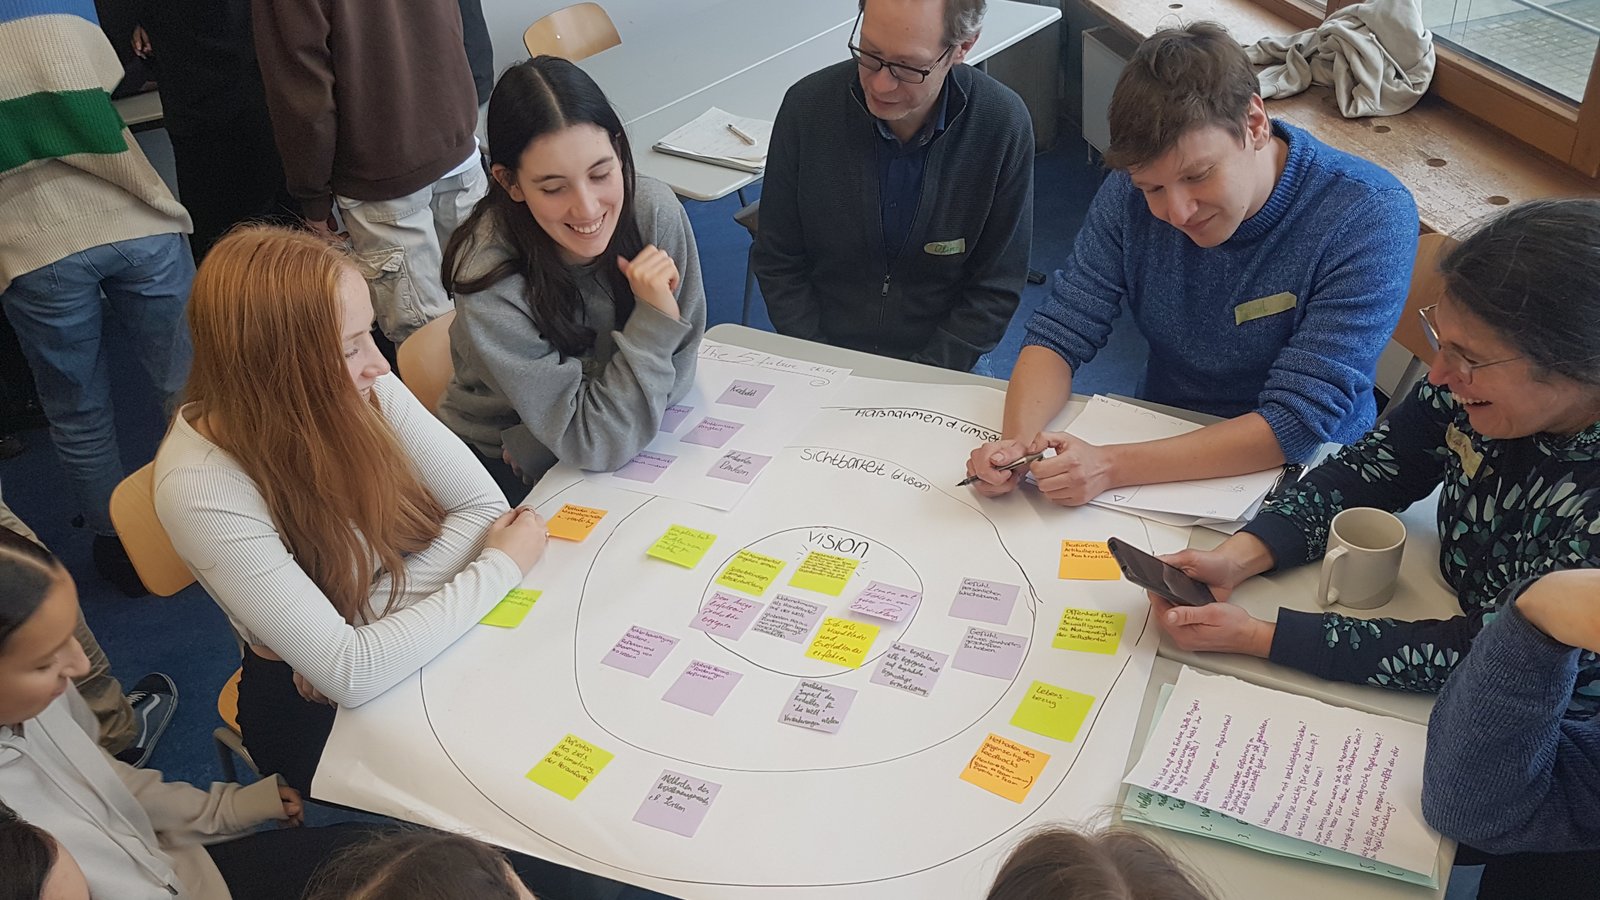 Wie könnte die Schule der Zukunft aussehen? Beim Workshop mit Georgi Panayotov vom Learnlife-Center Barcelona bringen Schüler und Lehrkräfte ihre Vorstellungen ein.  Foto: p